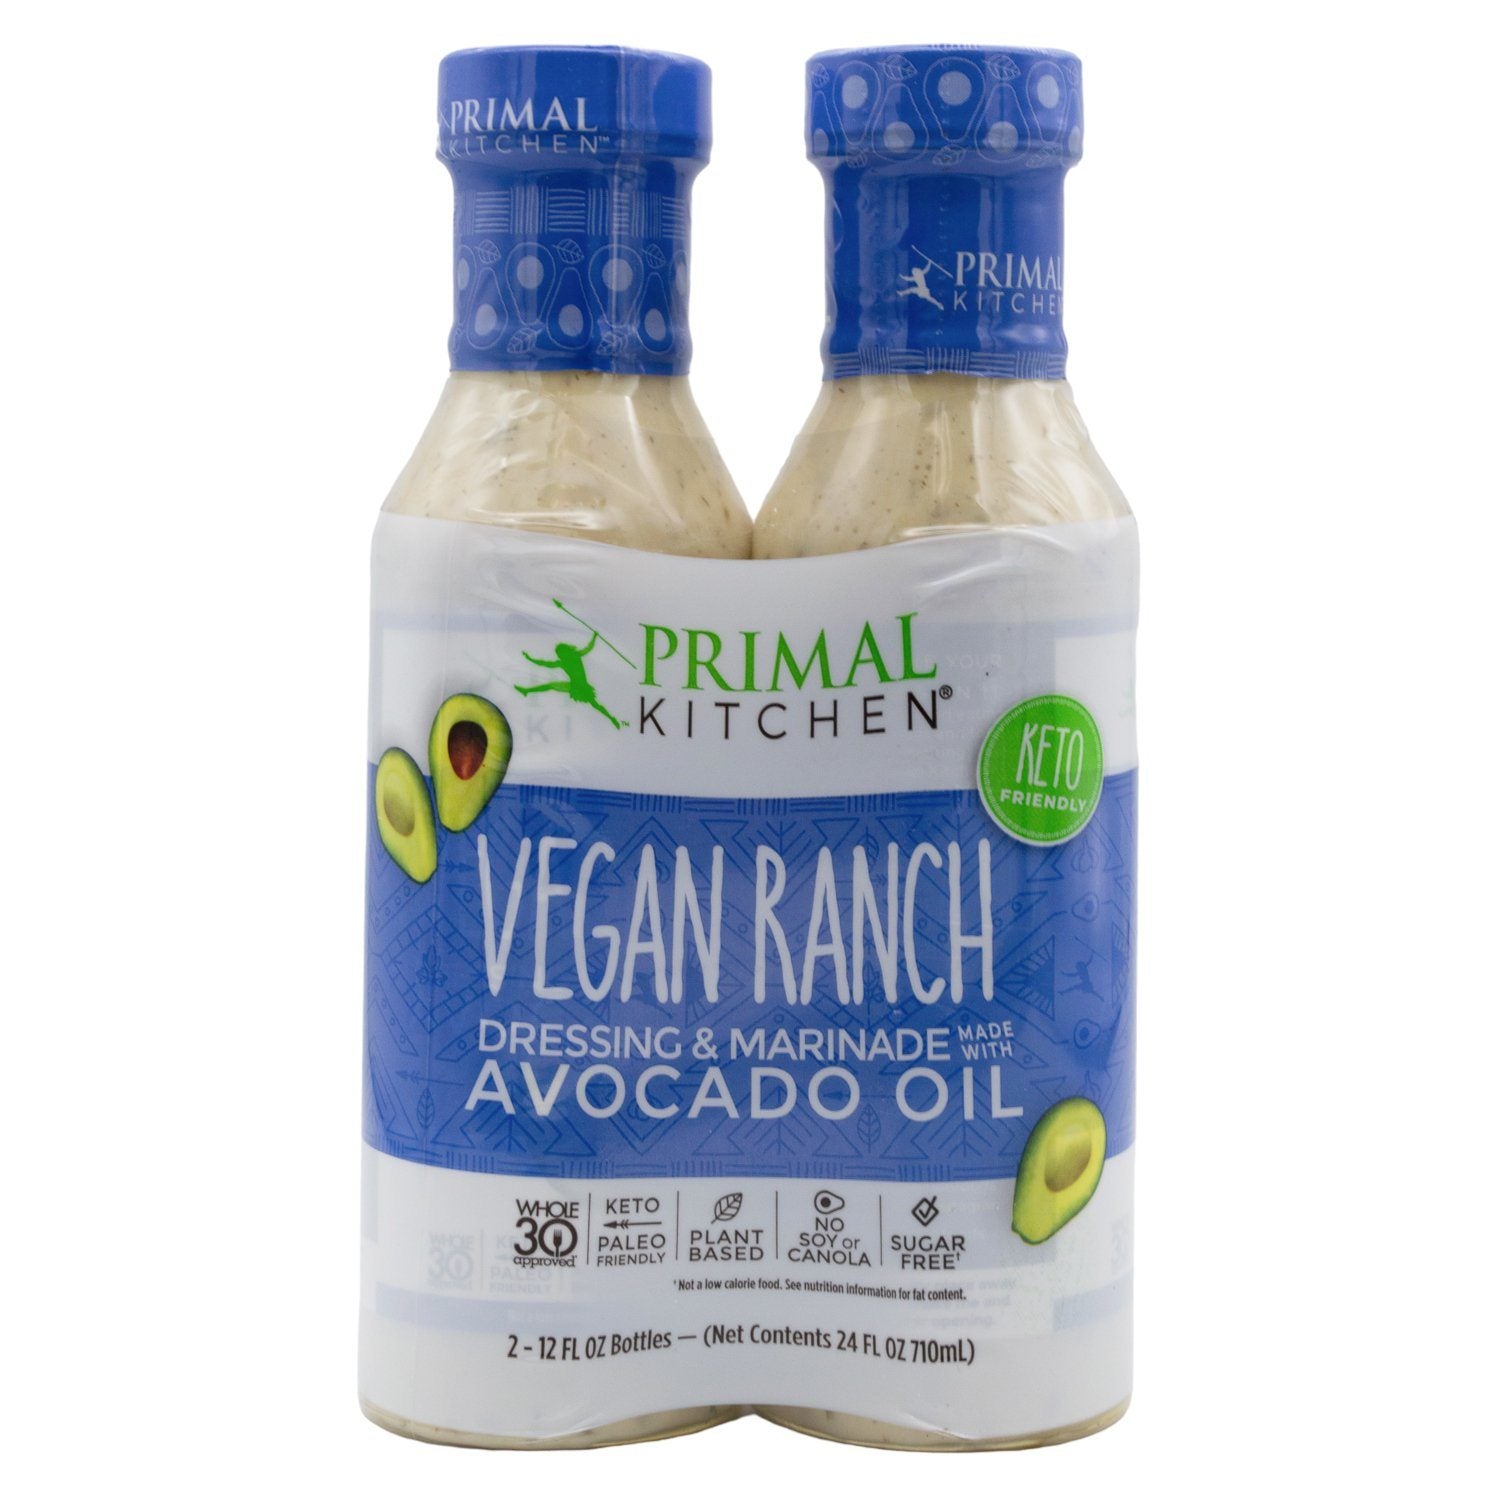 Primal Kitchen Vegan Ranch Dressing Reviews